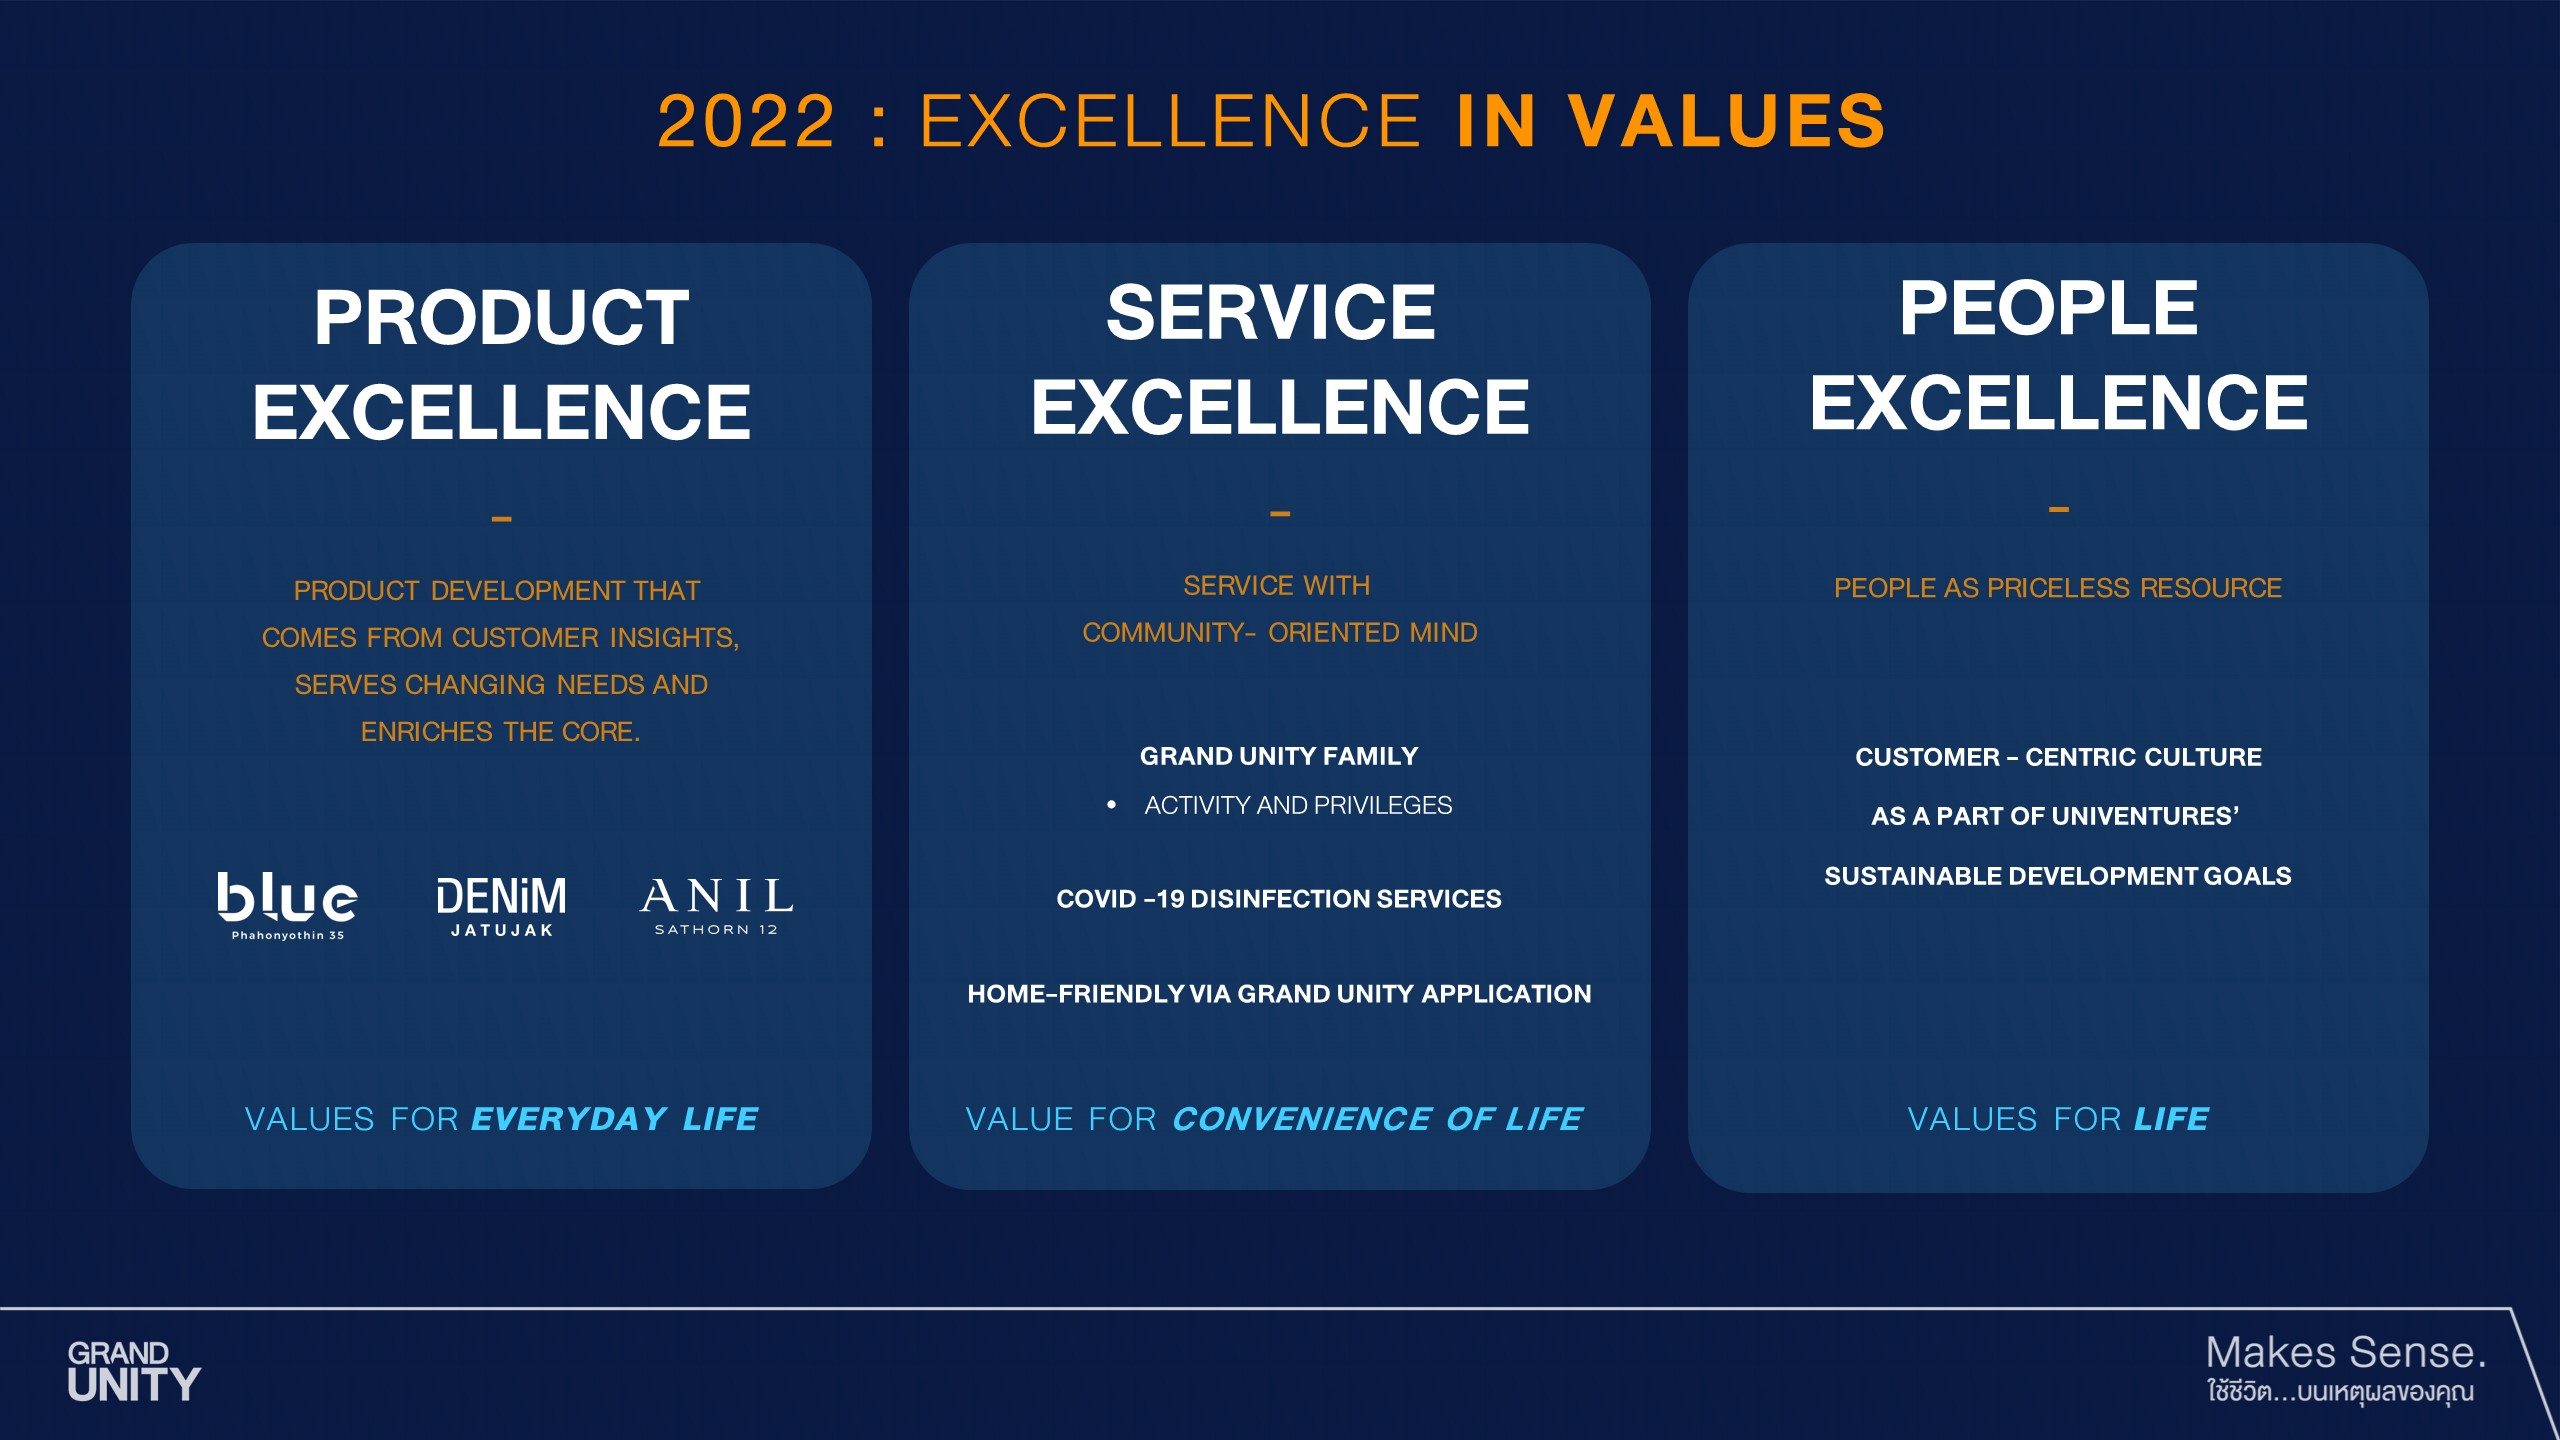 บริษัท ชูวิสัยทัศน์ Excellence in Values เพื่อยกระดับ 3 กลยุทธ์สำคัญไปสู่การส่งต่อคุณค่าที่เป็นเลิศให้กับลูกค้า